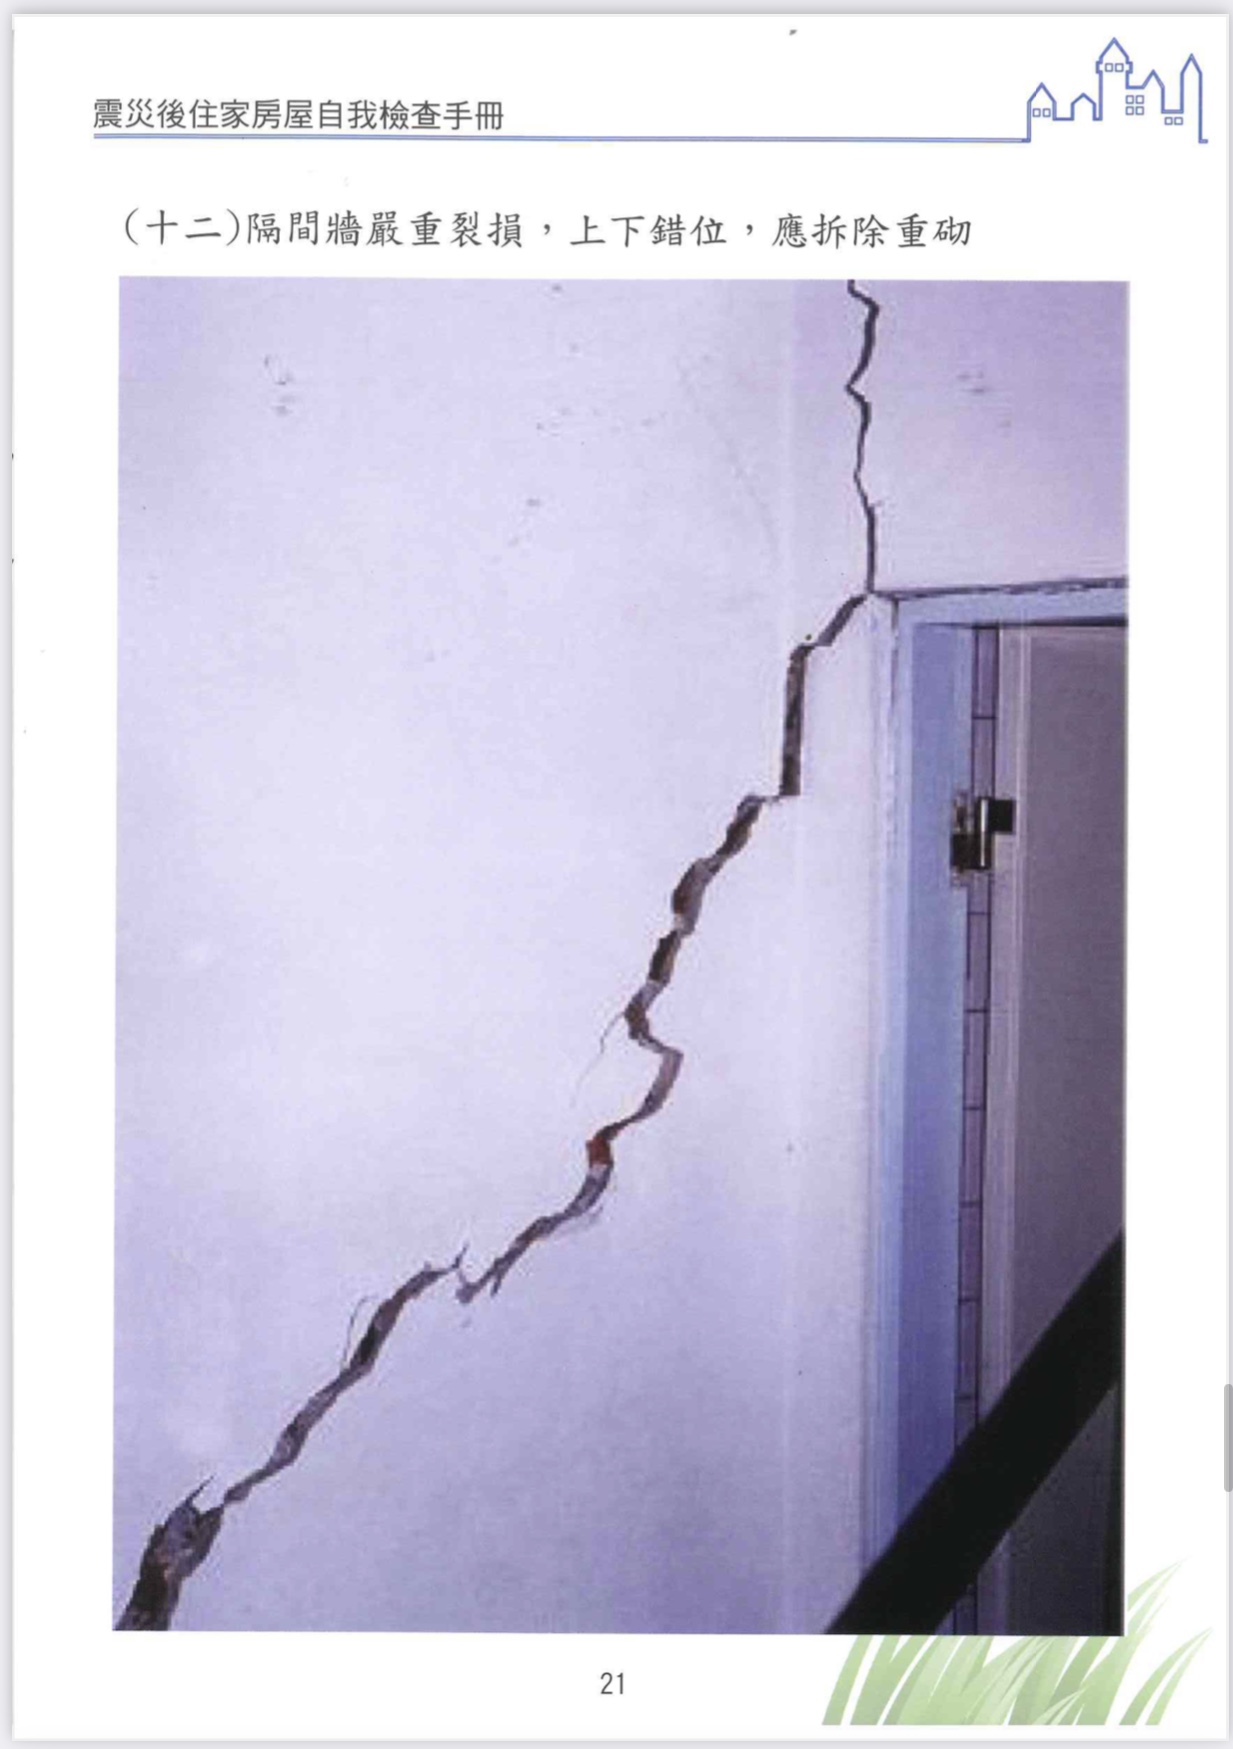 地震後房屋檢查